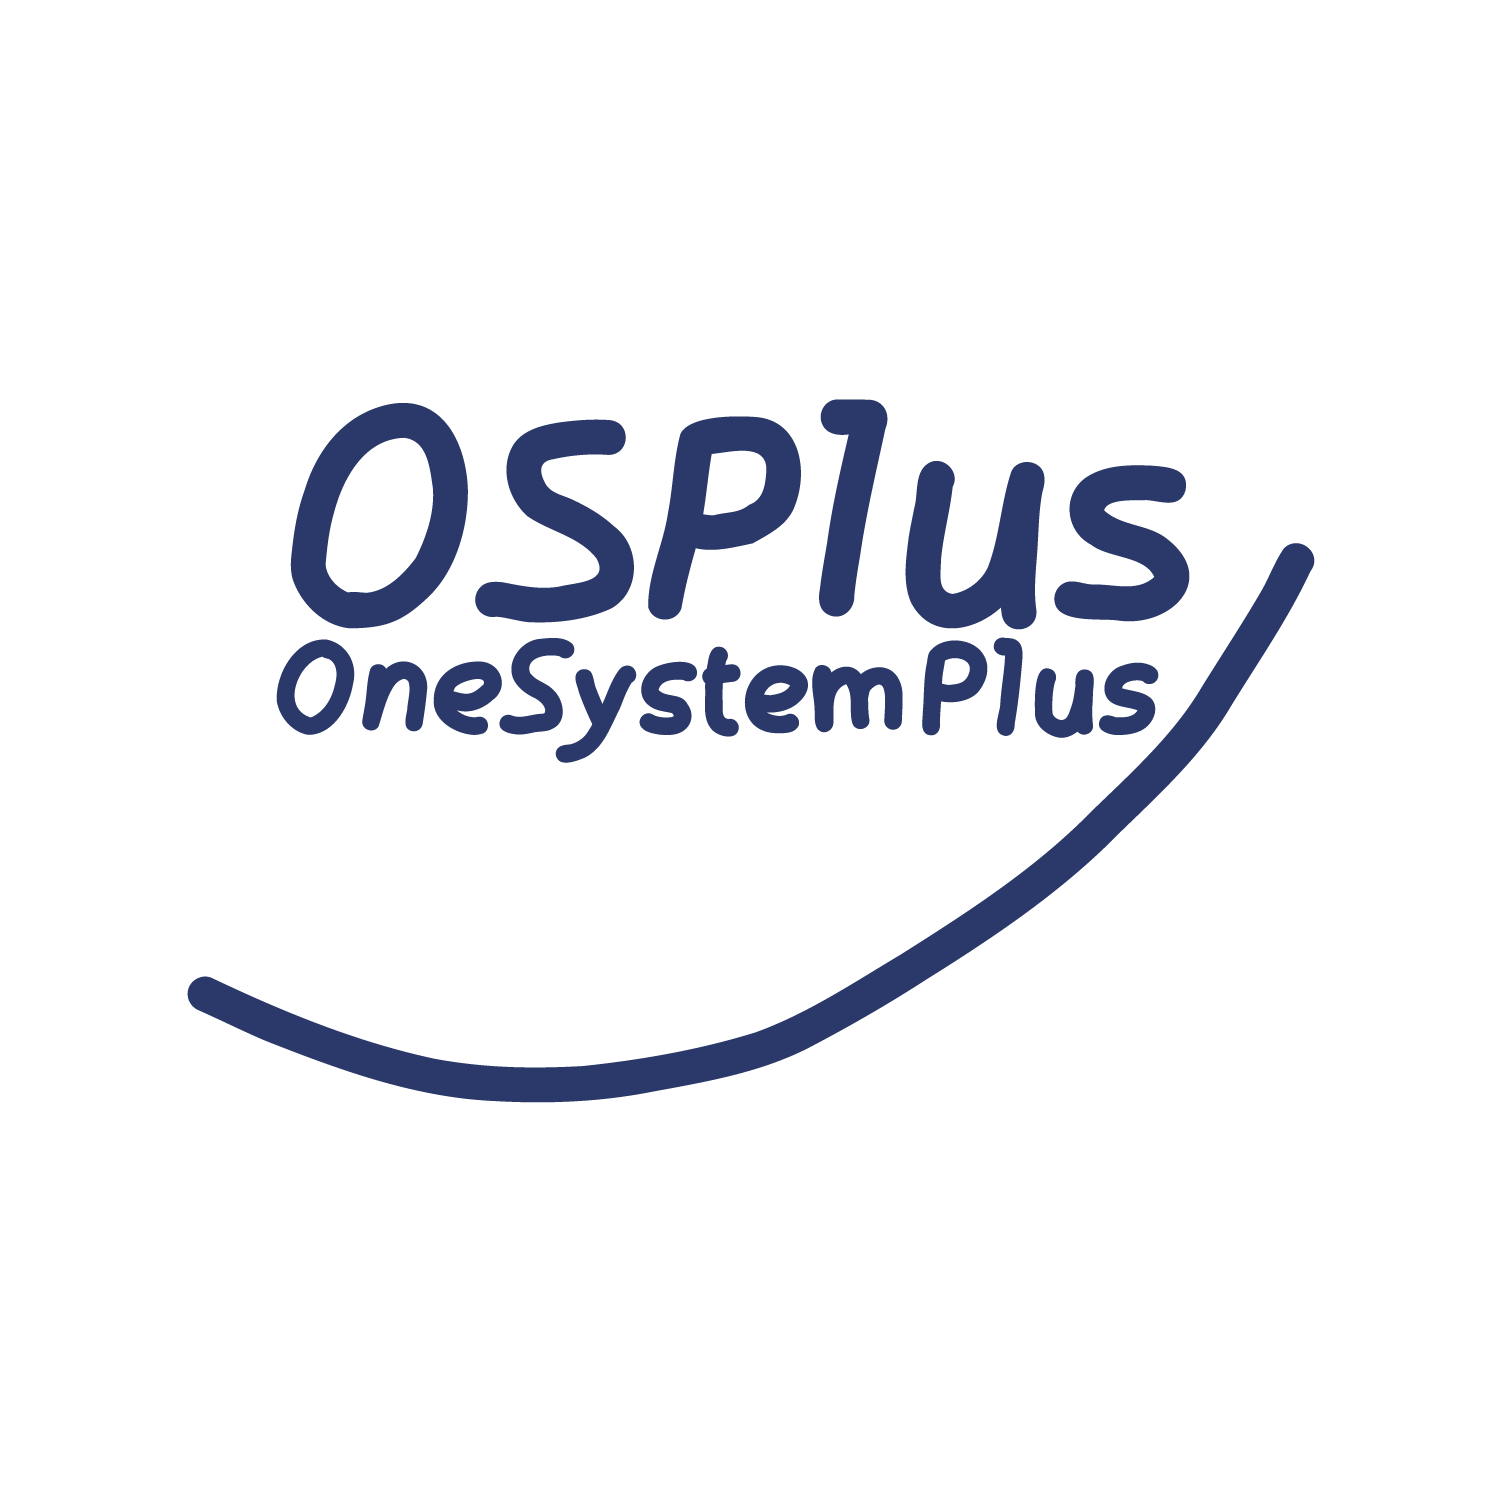 OS-Plus als Beispiel eines möglichen Ansatzes für den Wandel zum Open Banking